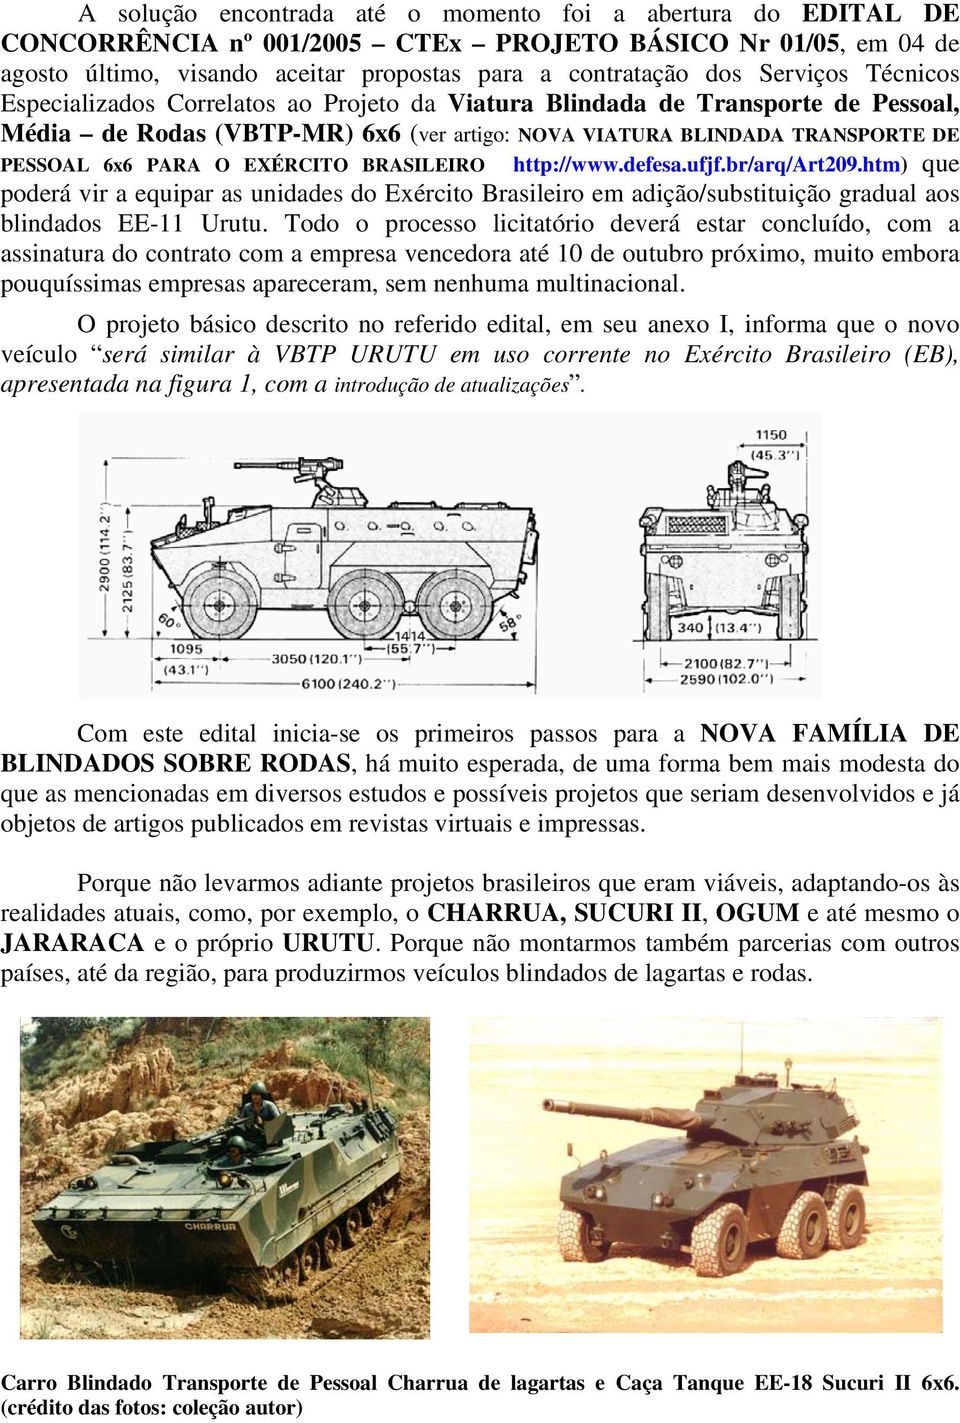 BRASILEIRO http://www.defesa.ufjf.br/arq/art209.htm) que poderá vir a equipar as unidades do Exército Brasileiro em adição/substituição gradual aos blindados EE-11 Urutu.